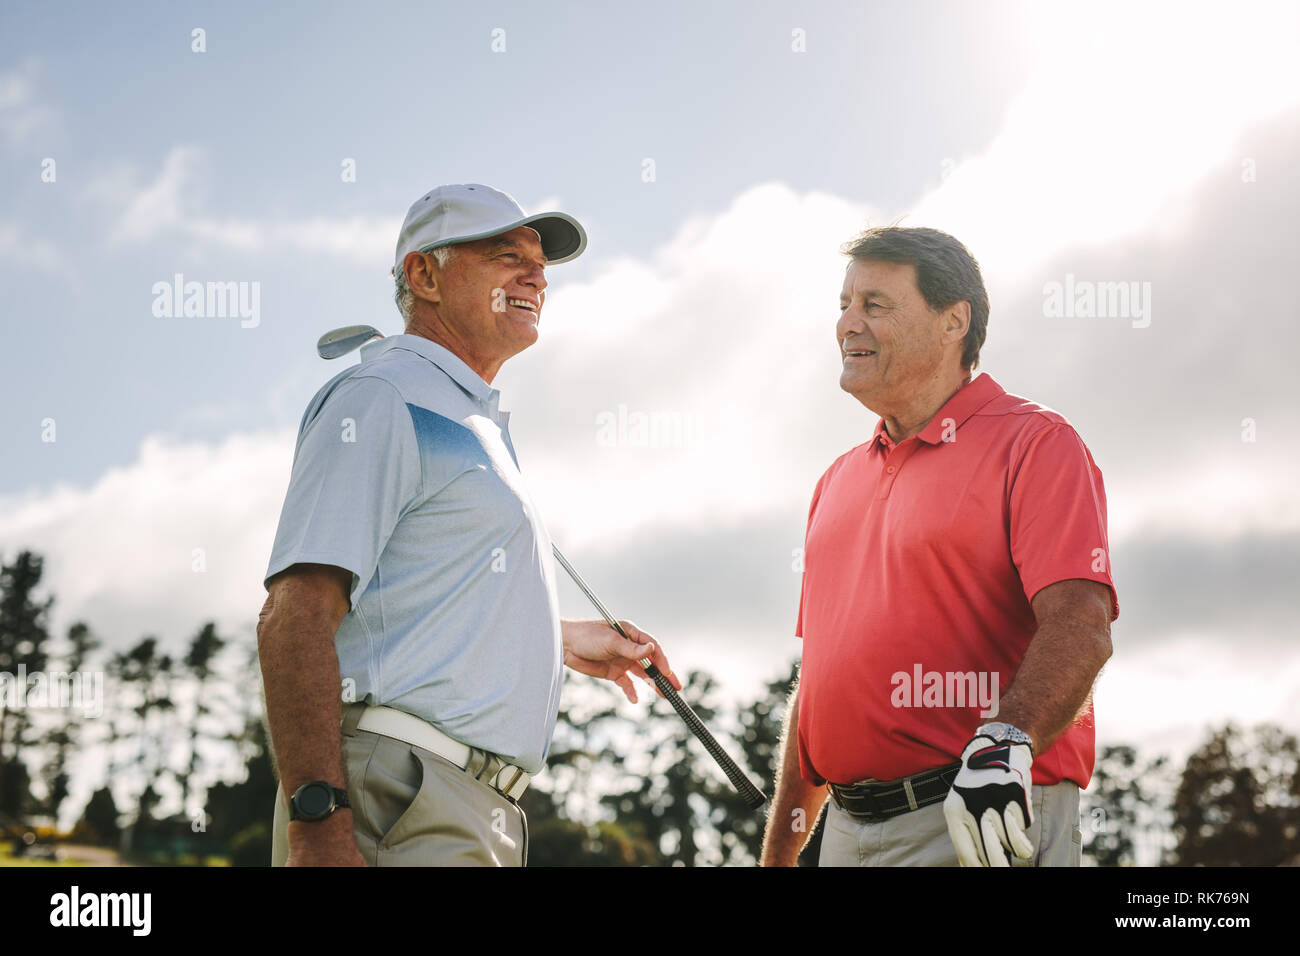 Zwei ältere Golf Spieler mit Golf Clubs zusammen und im Gespräch zwischen dem Spiel an einem sonnigen Tag. Professionelle Golfspieler in zwischen den ga Chat Stockfoto